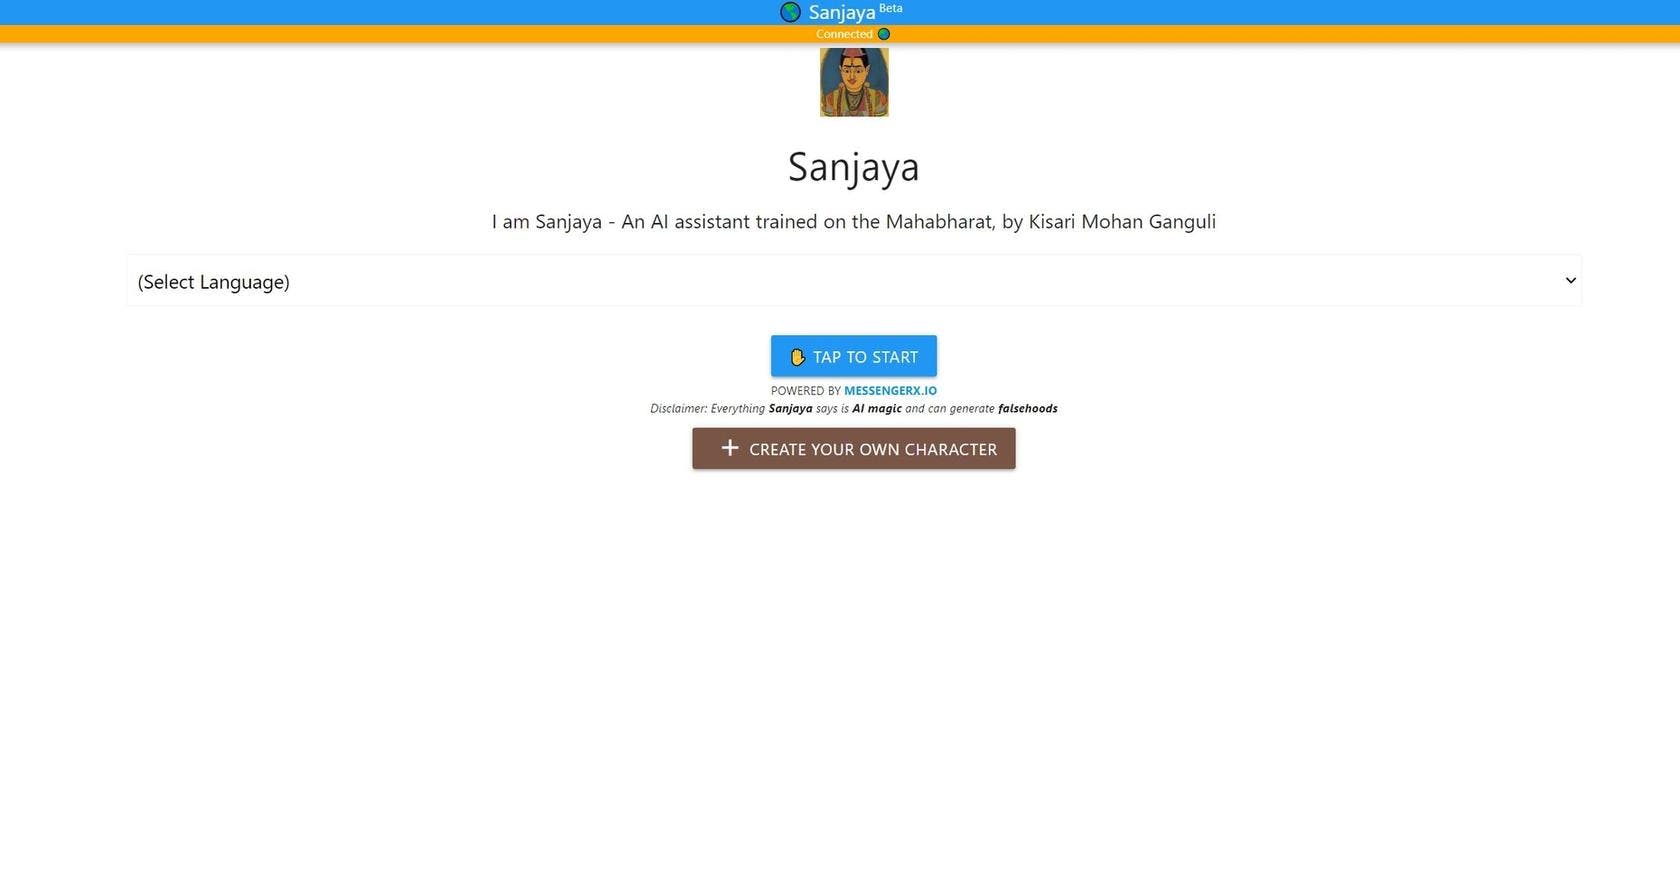 ThemotherAI - Sanjaya chatbot